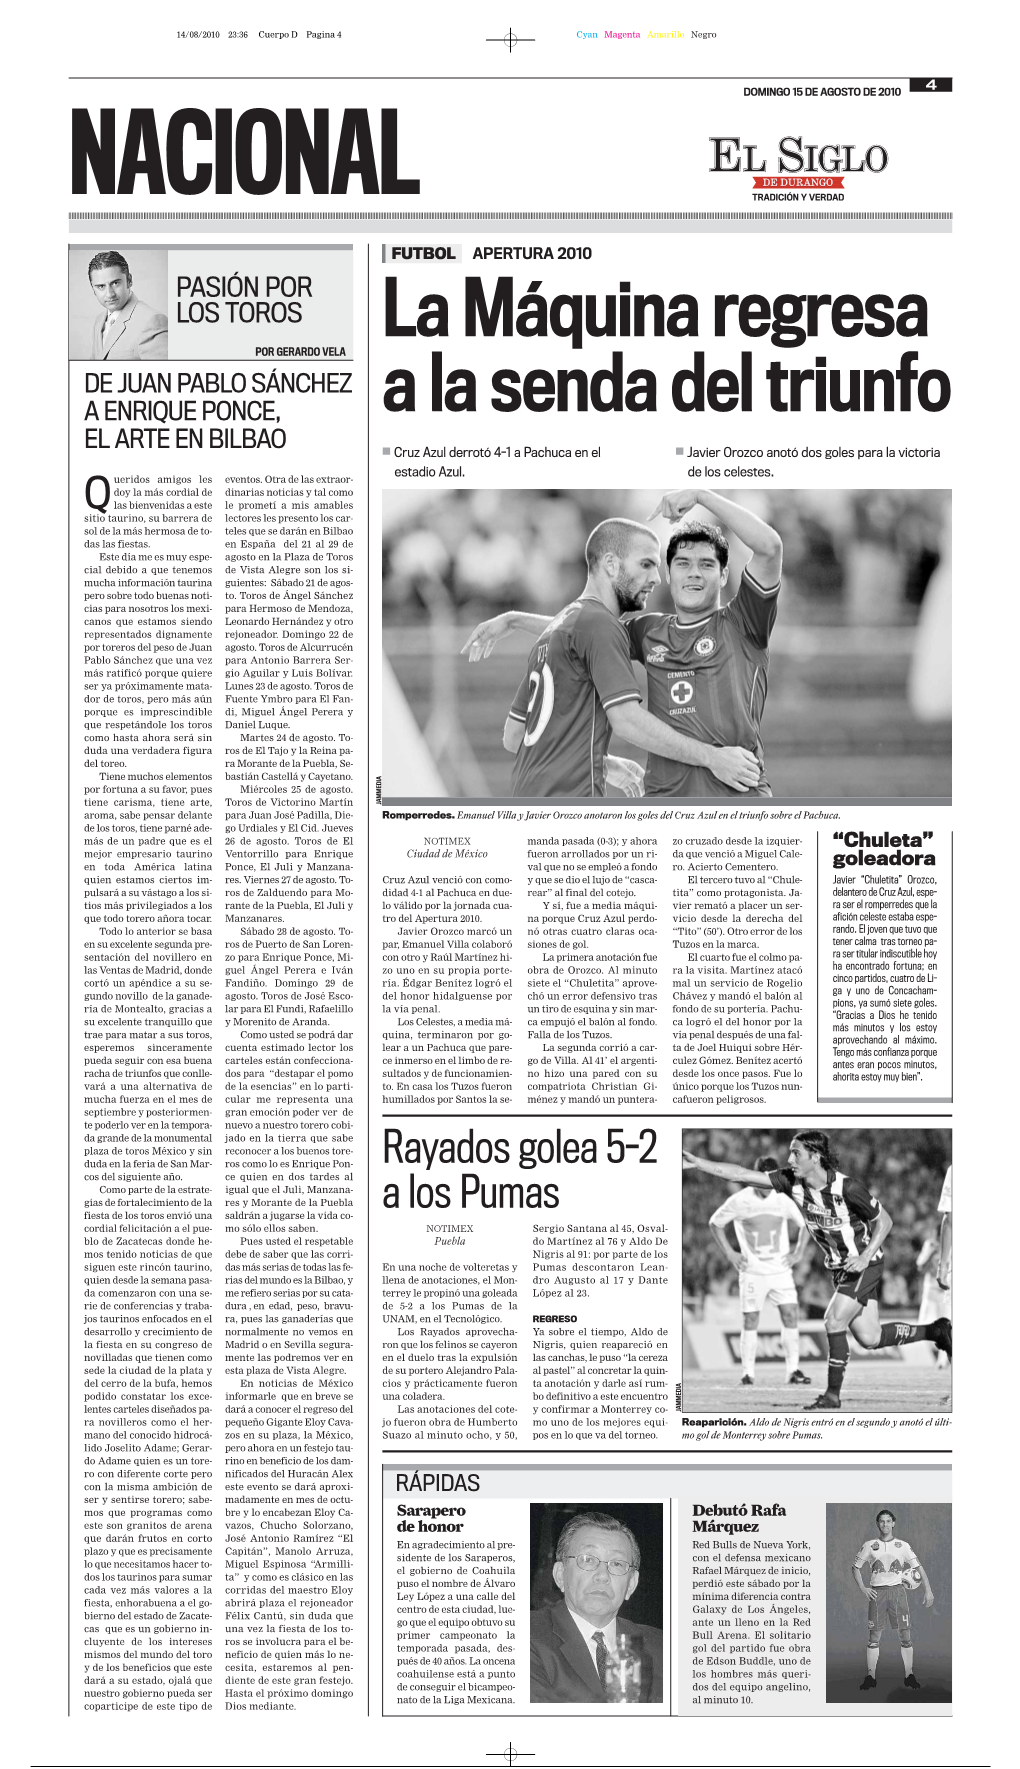 Rayados Golea 5-2 a Los Pumas